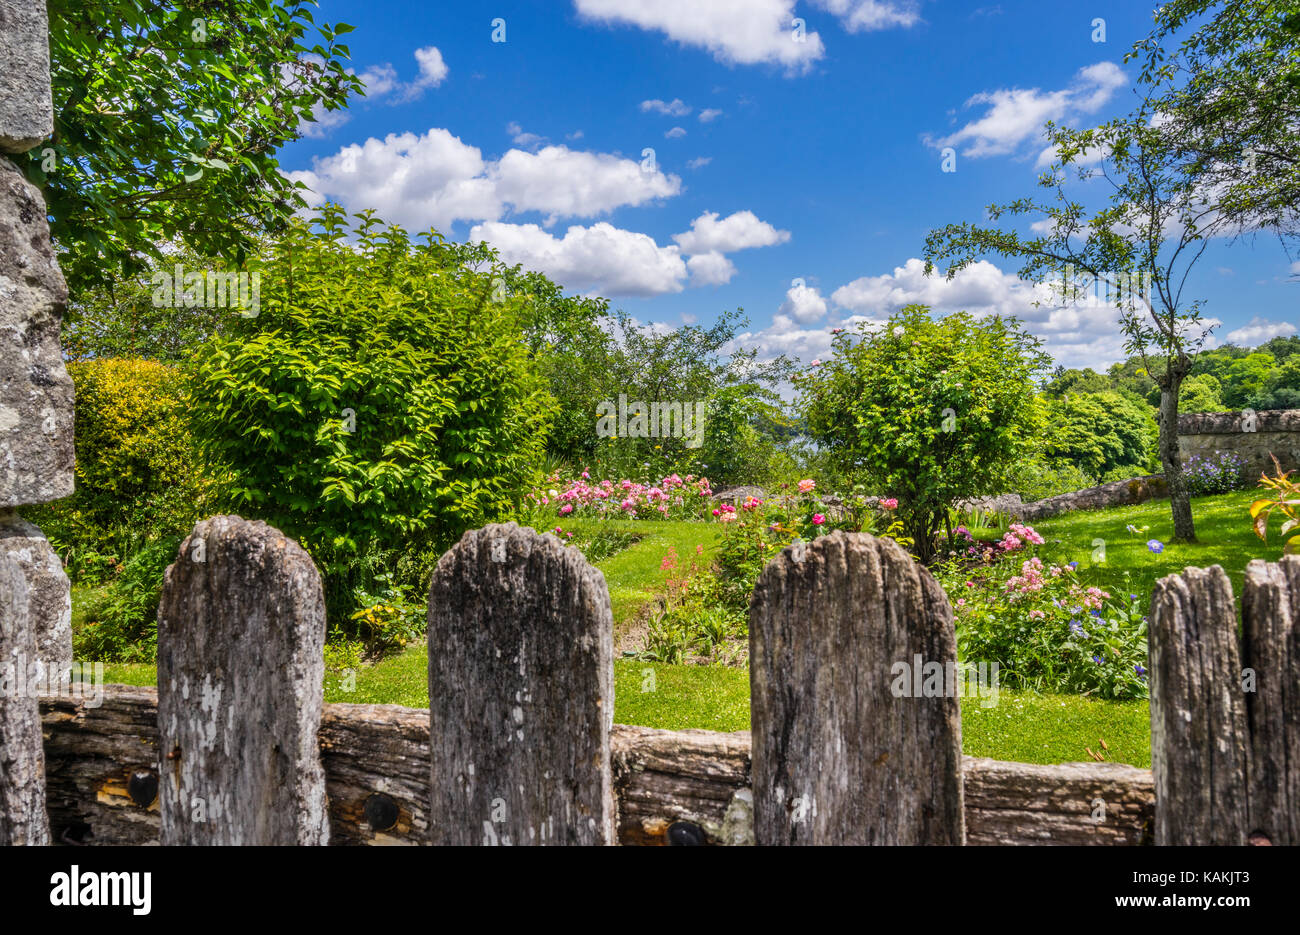 France, Pays de la Loire, Maine-et-Loire department, idyllic garden at Montsoreau in the Loire Valley Stock Photo